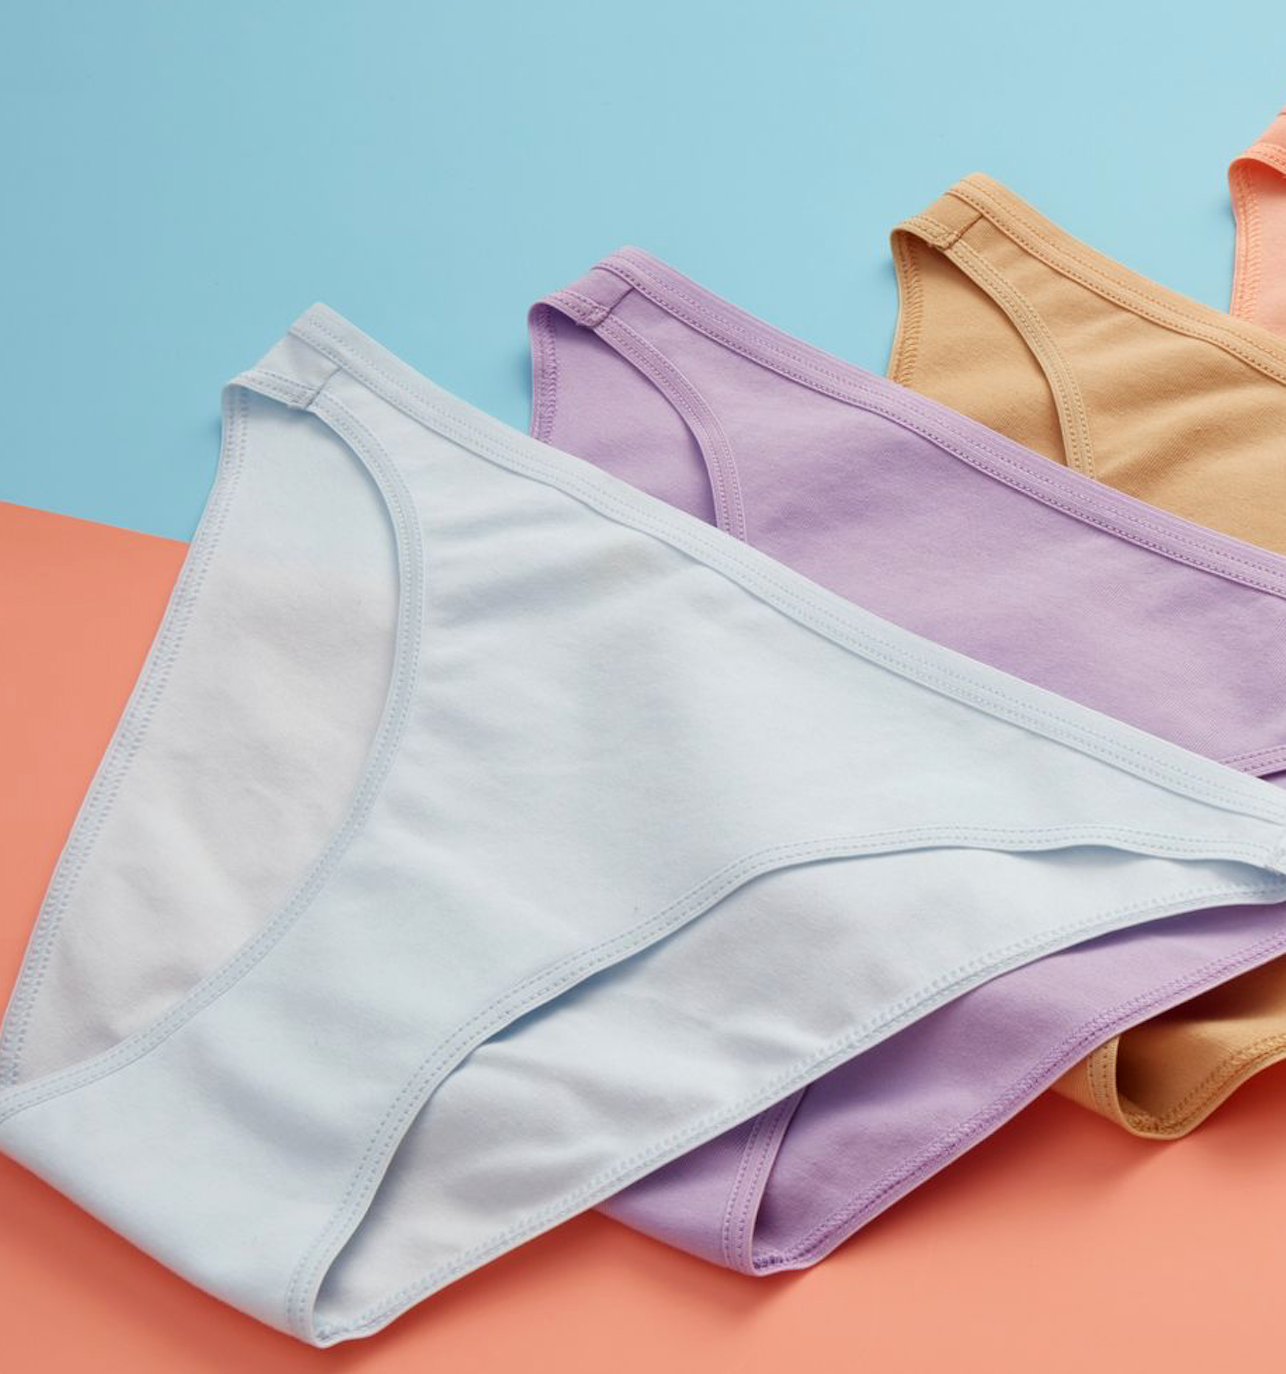 Create a unique pillow box design for our unique women's underwear